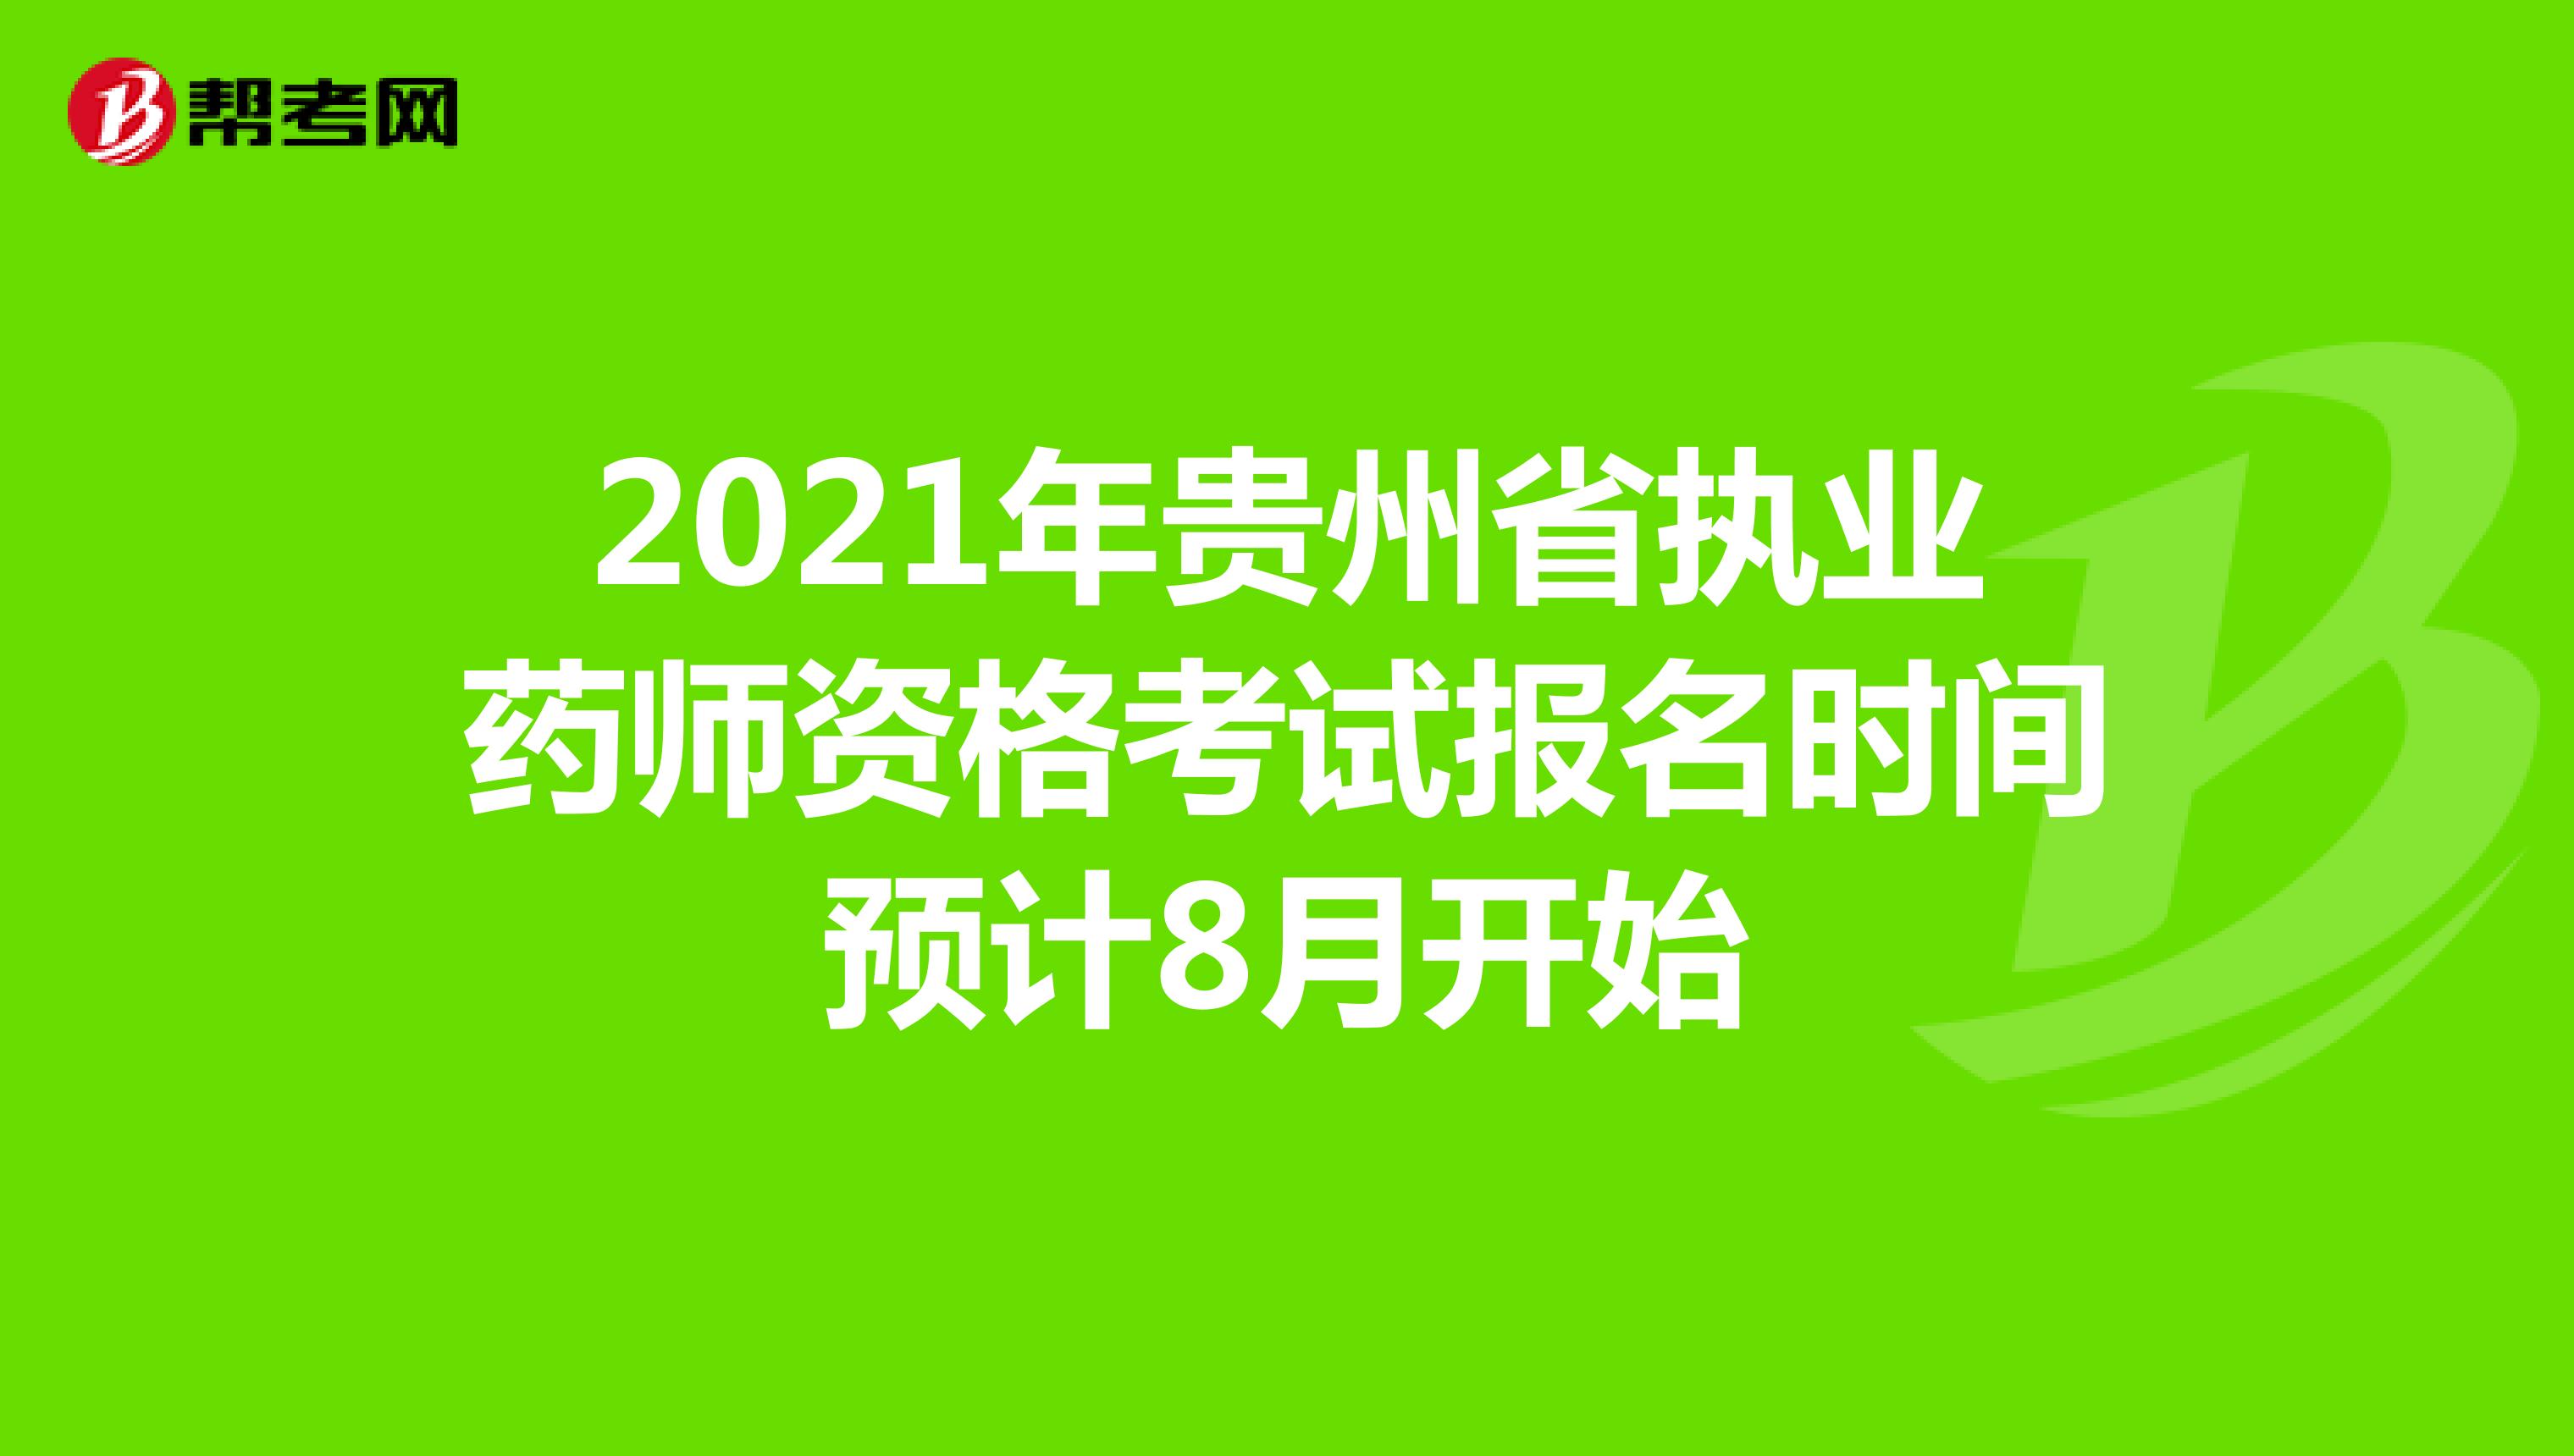 2021年贵州省执业药师资格考试报名时间预计8月开始